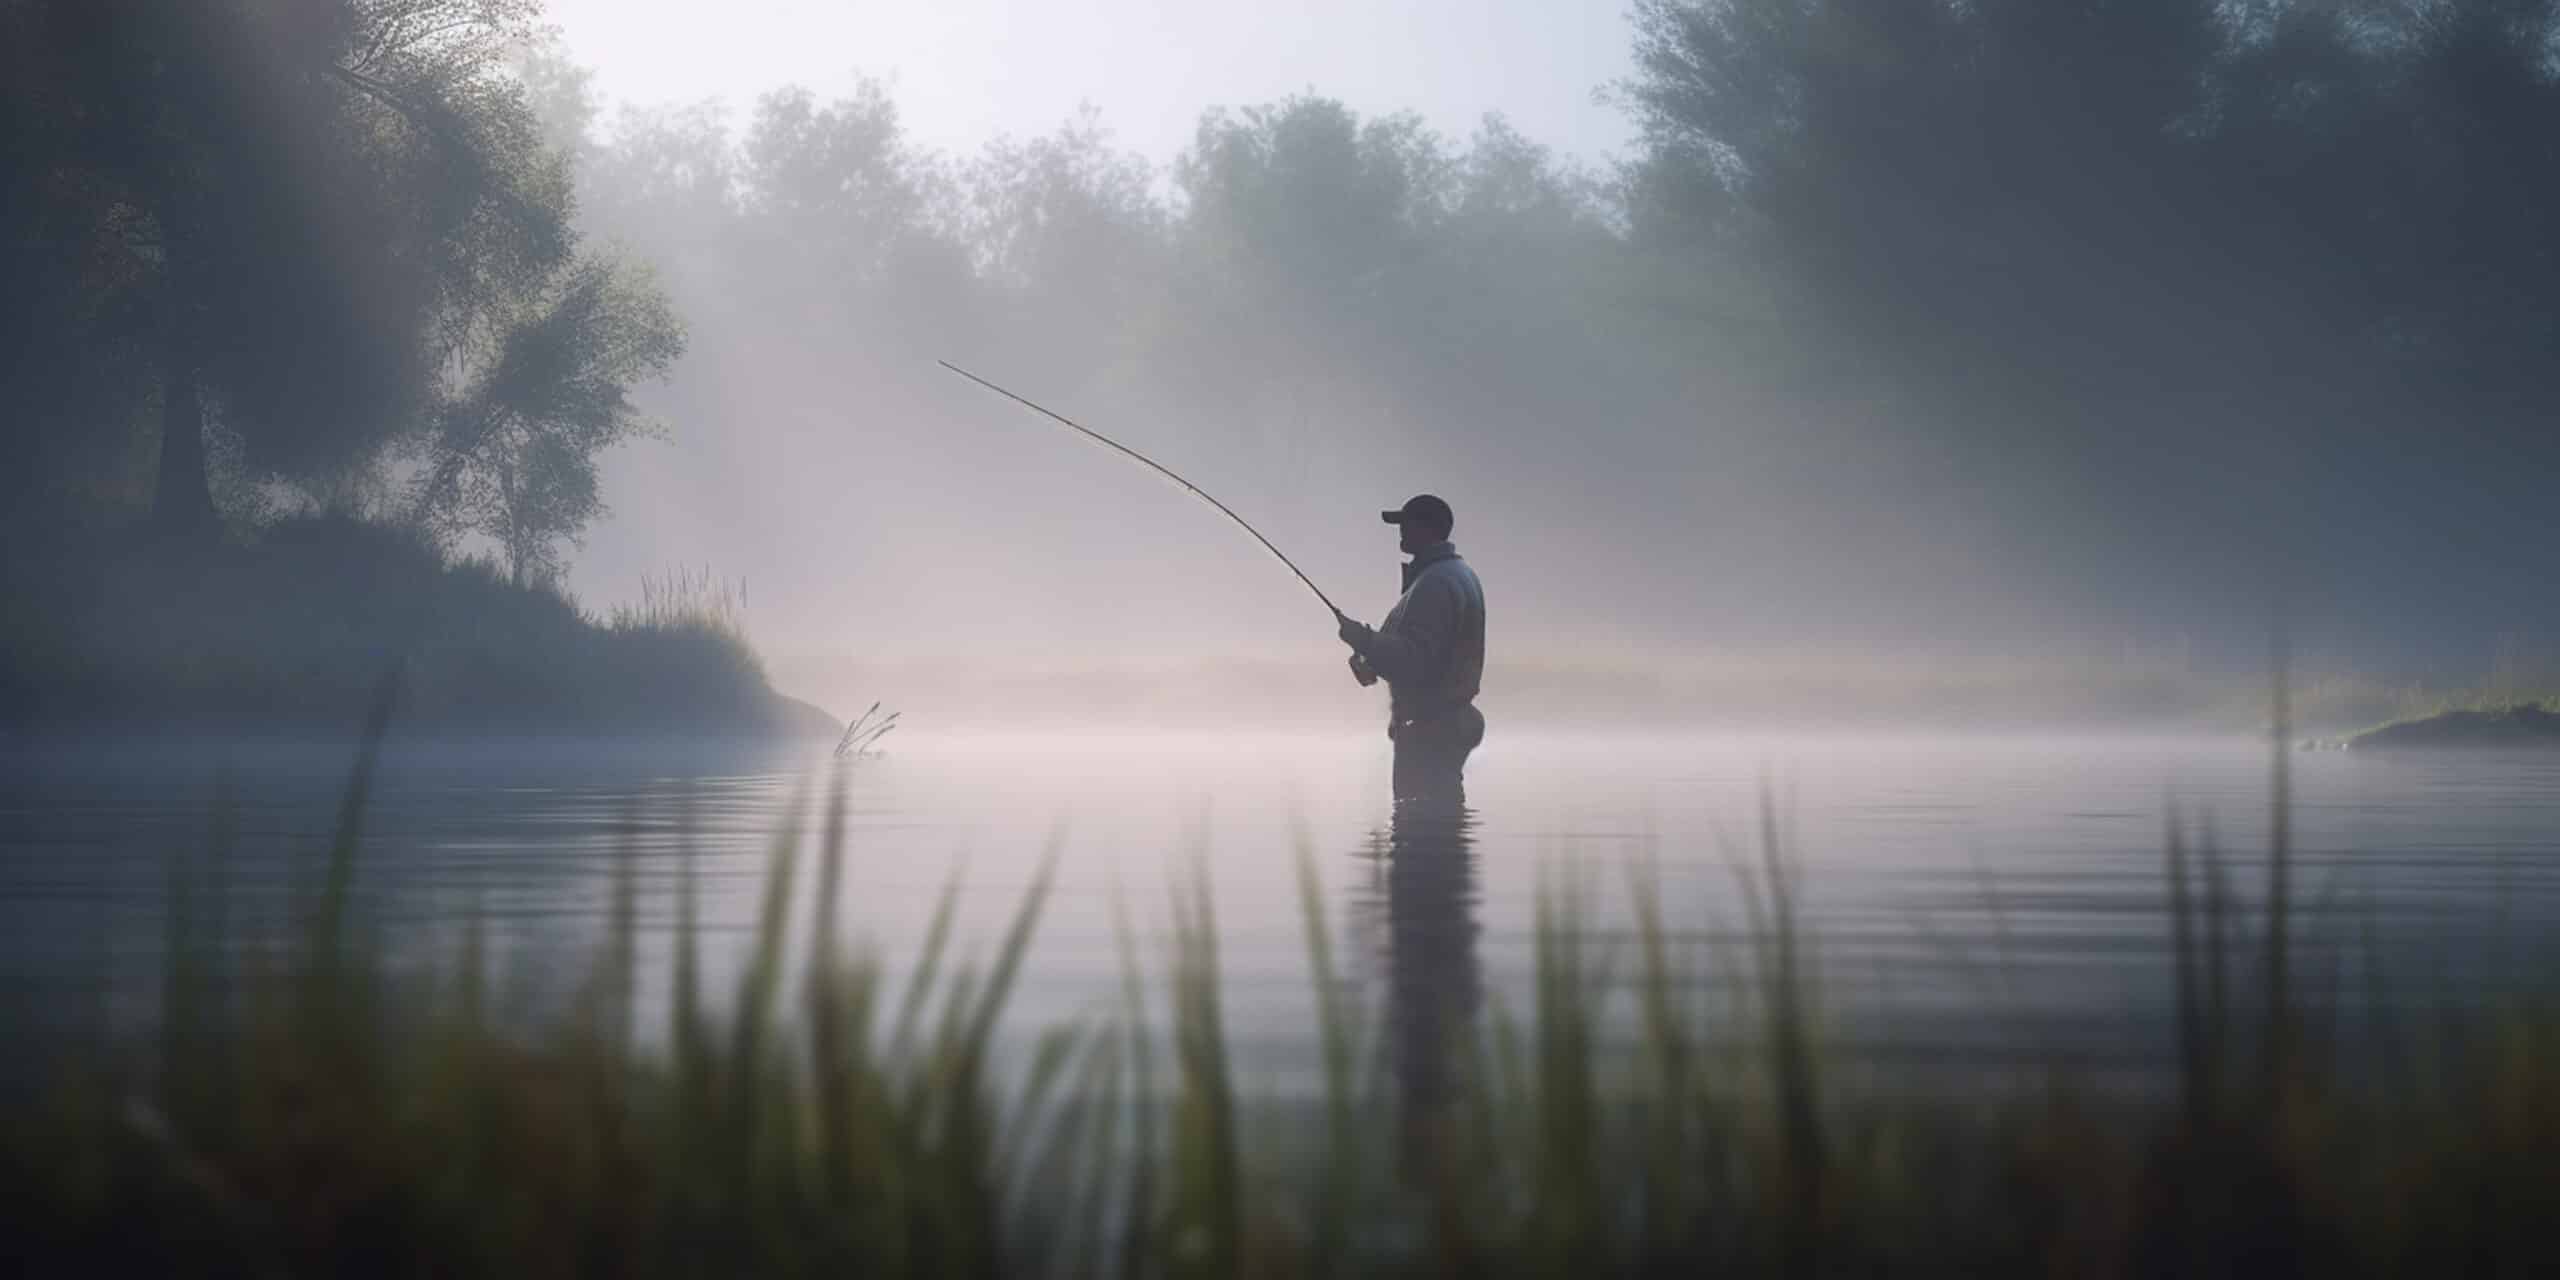 fanatic4fishing.com : How deep do you fish in a lake?